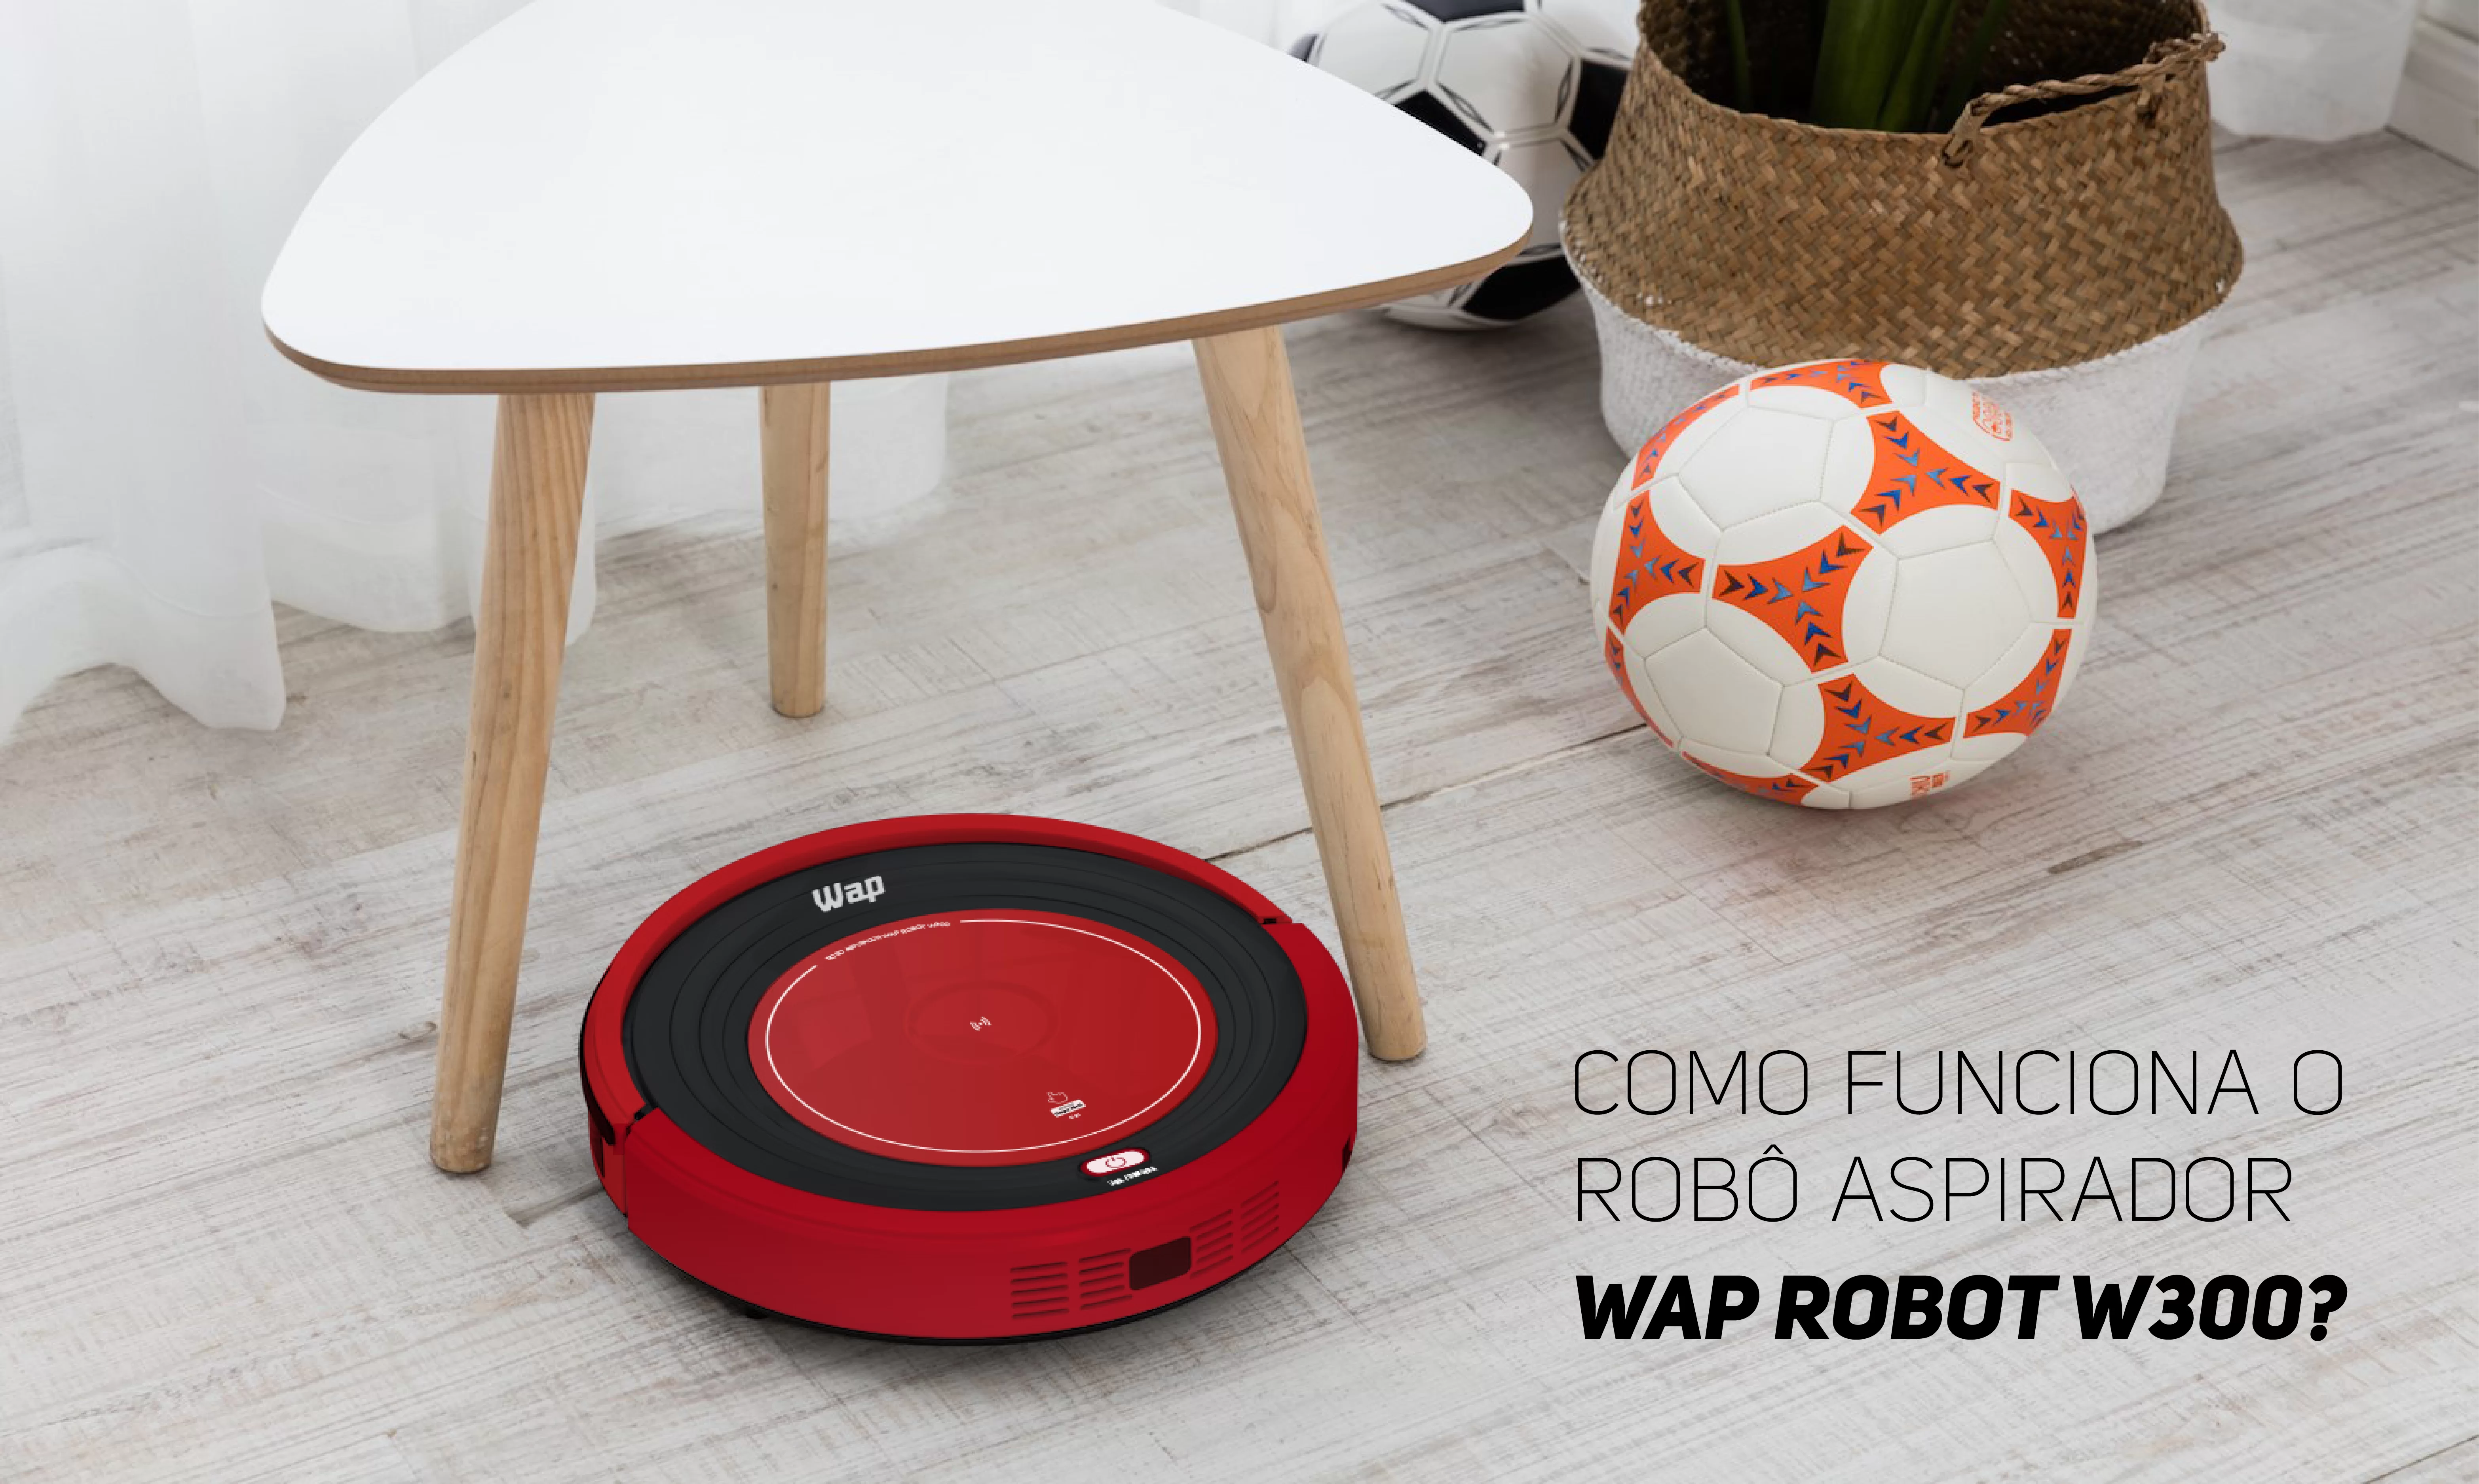 Como funciona o Robô Aspirador WAP Robot W300?